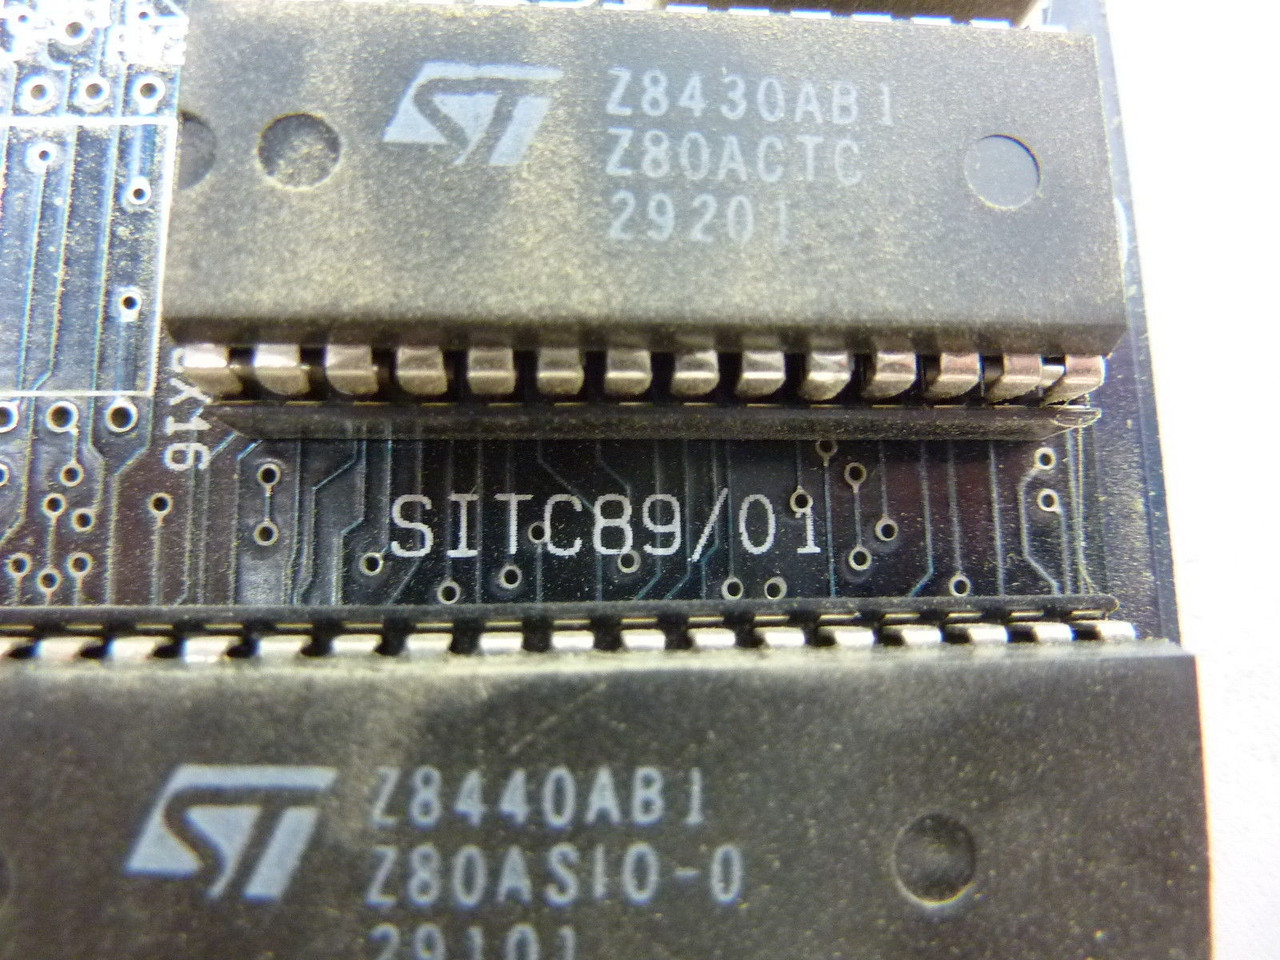 Tecnos SITC89/01 Circuit Board Module USED